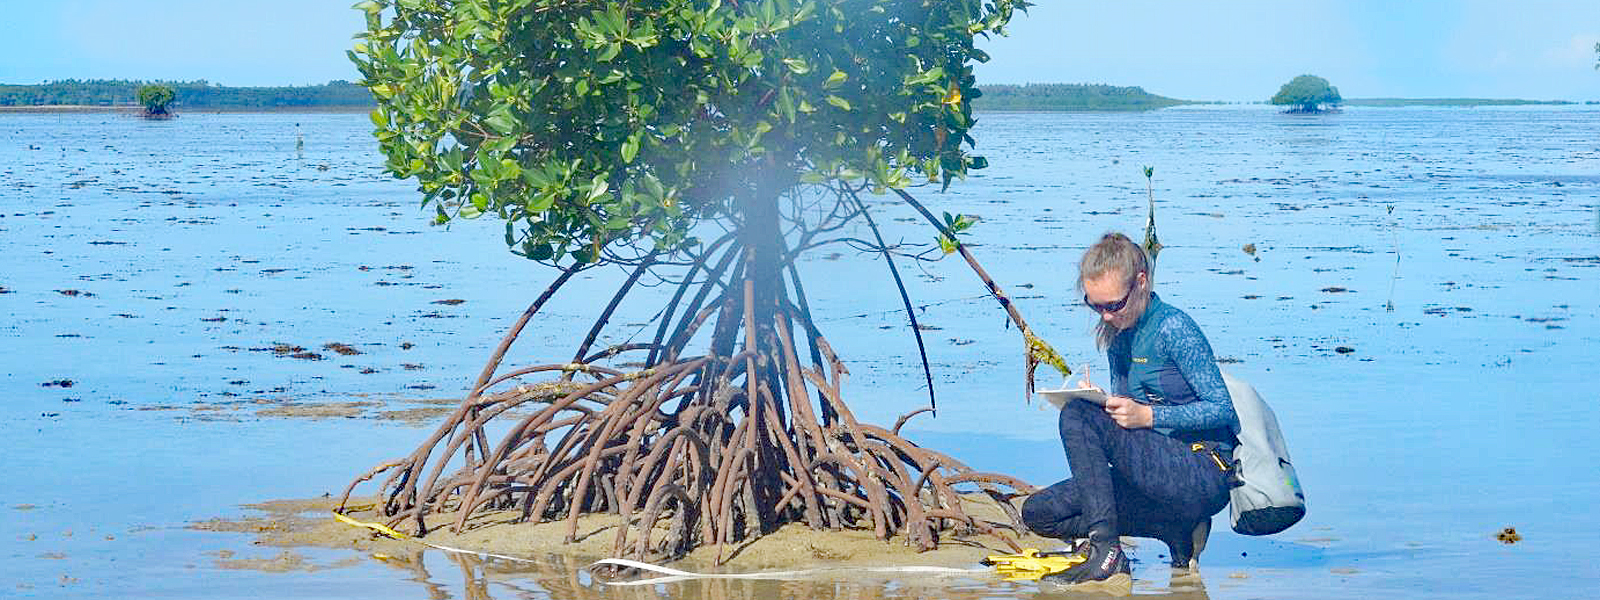 Forschungsprojekt auf den Mangroven